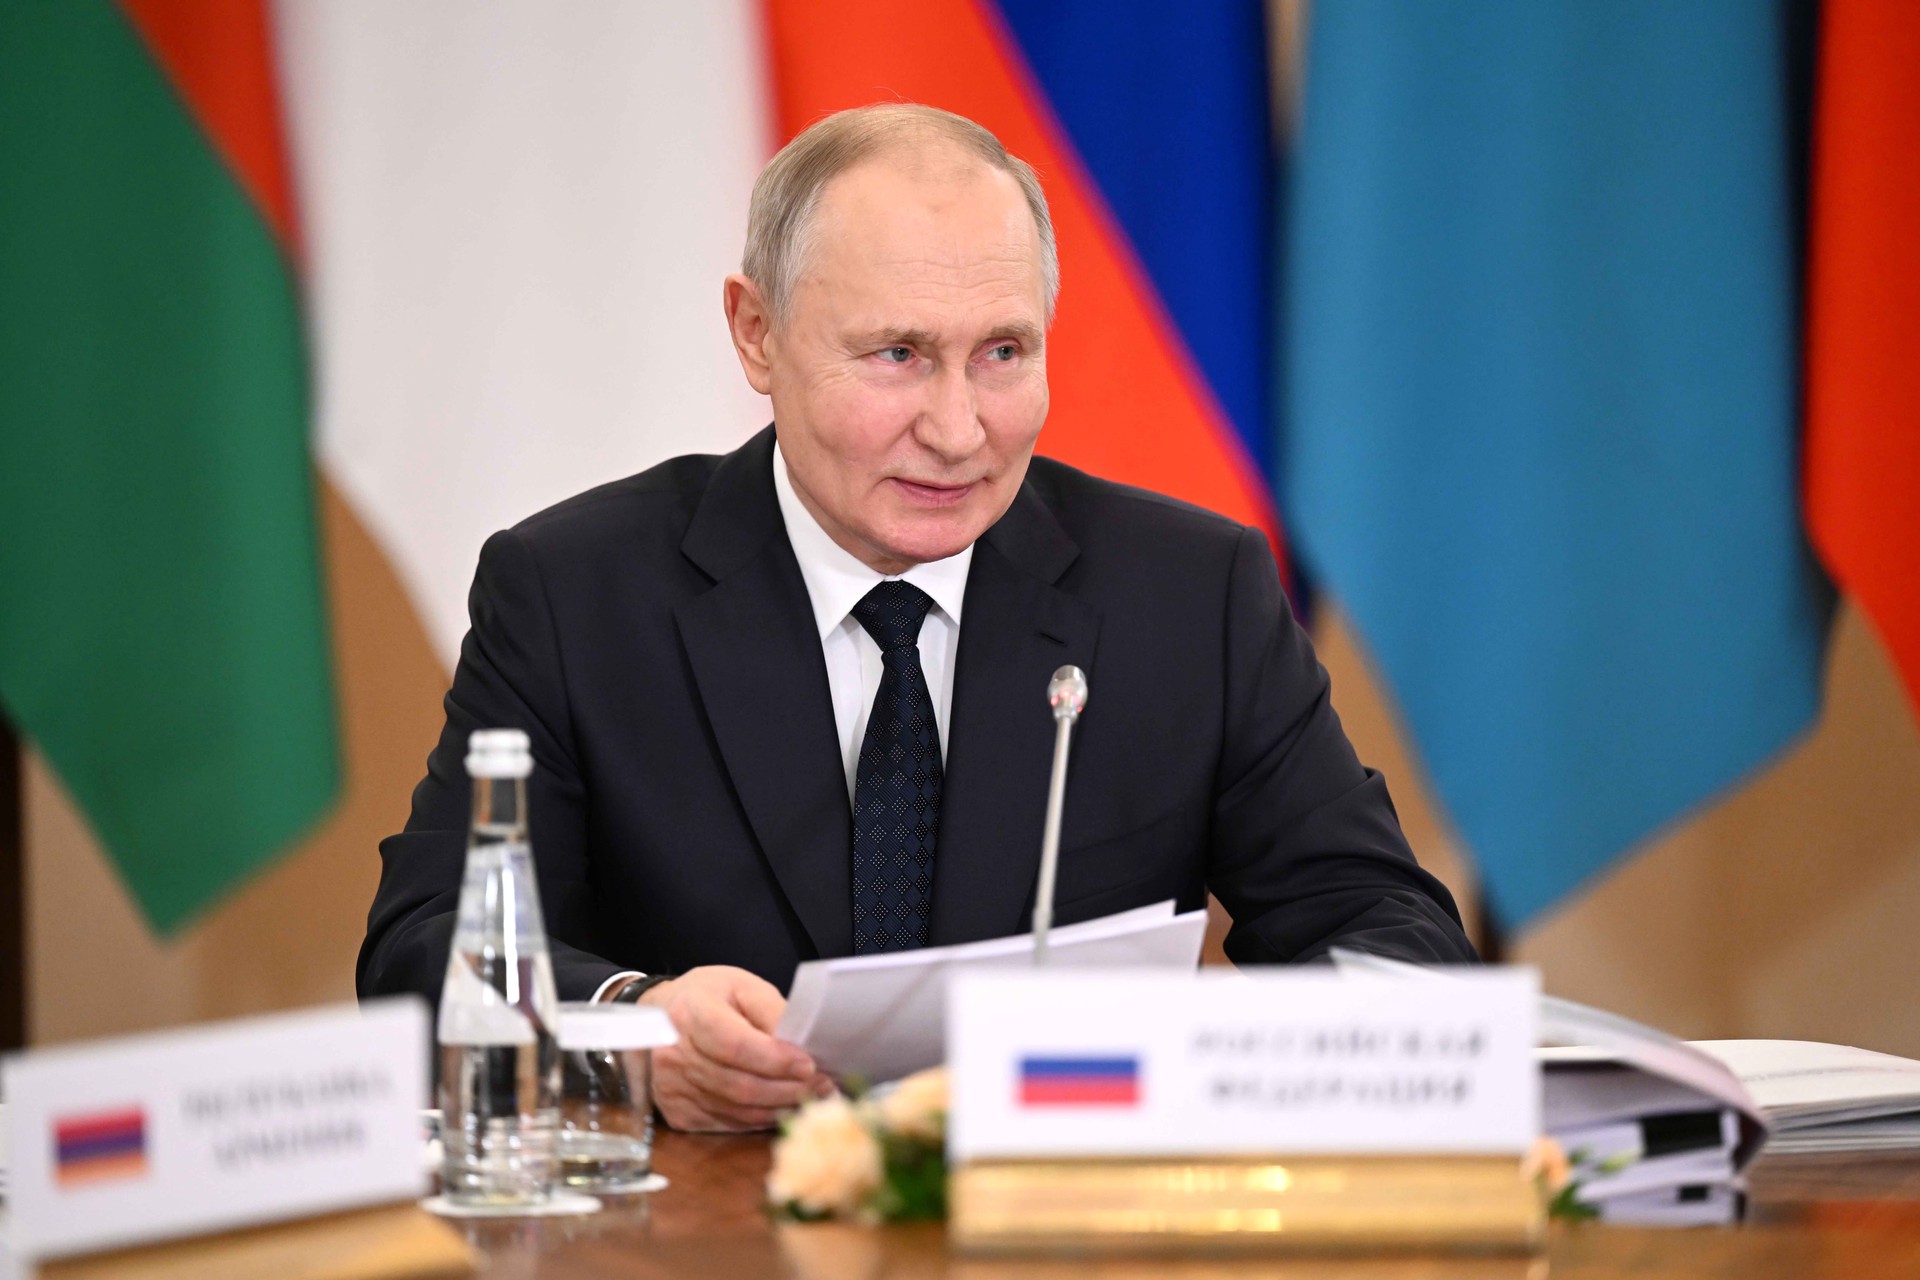 Пашинян поблагодарил Путина за организацию саммита ЕАЭС на самом высоком уровне